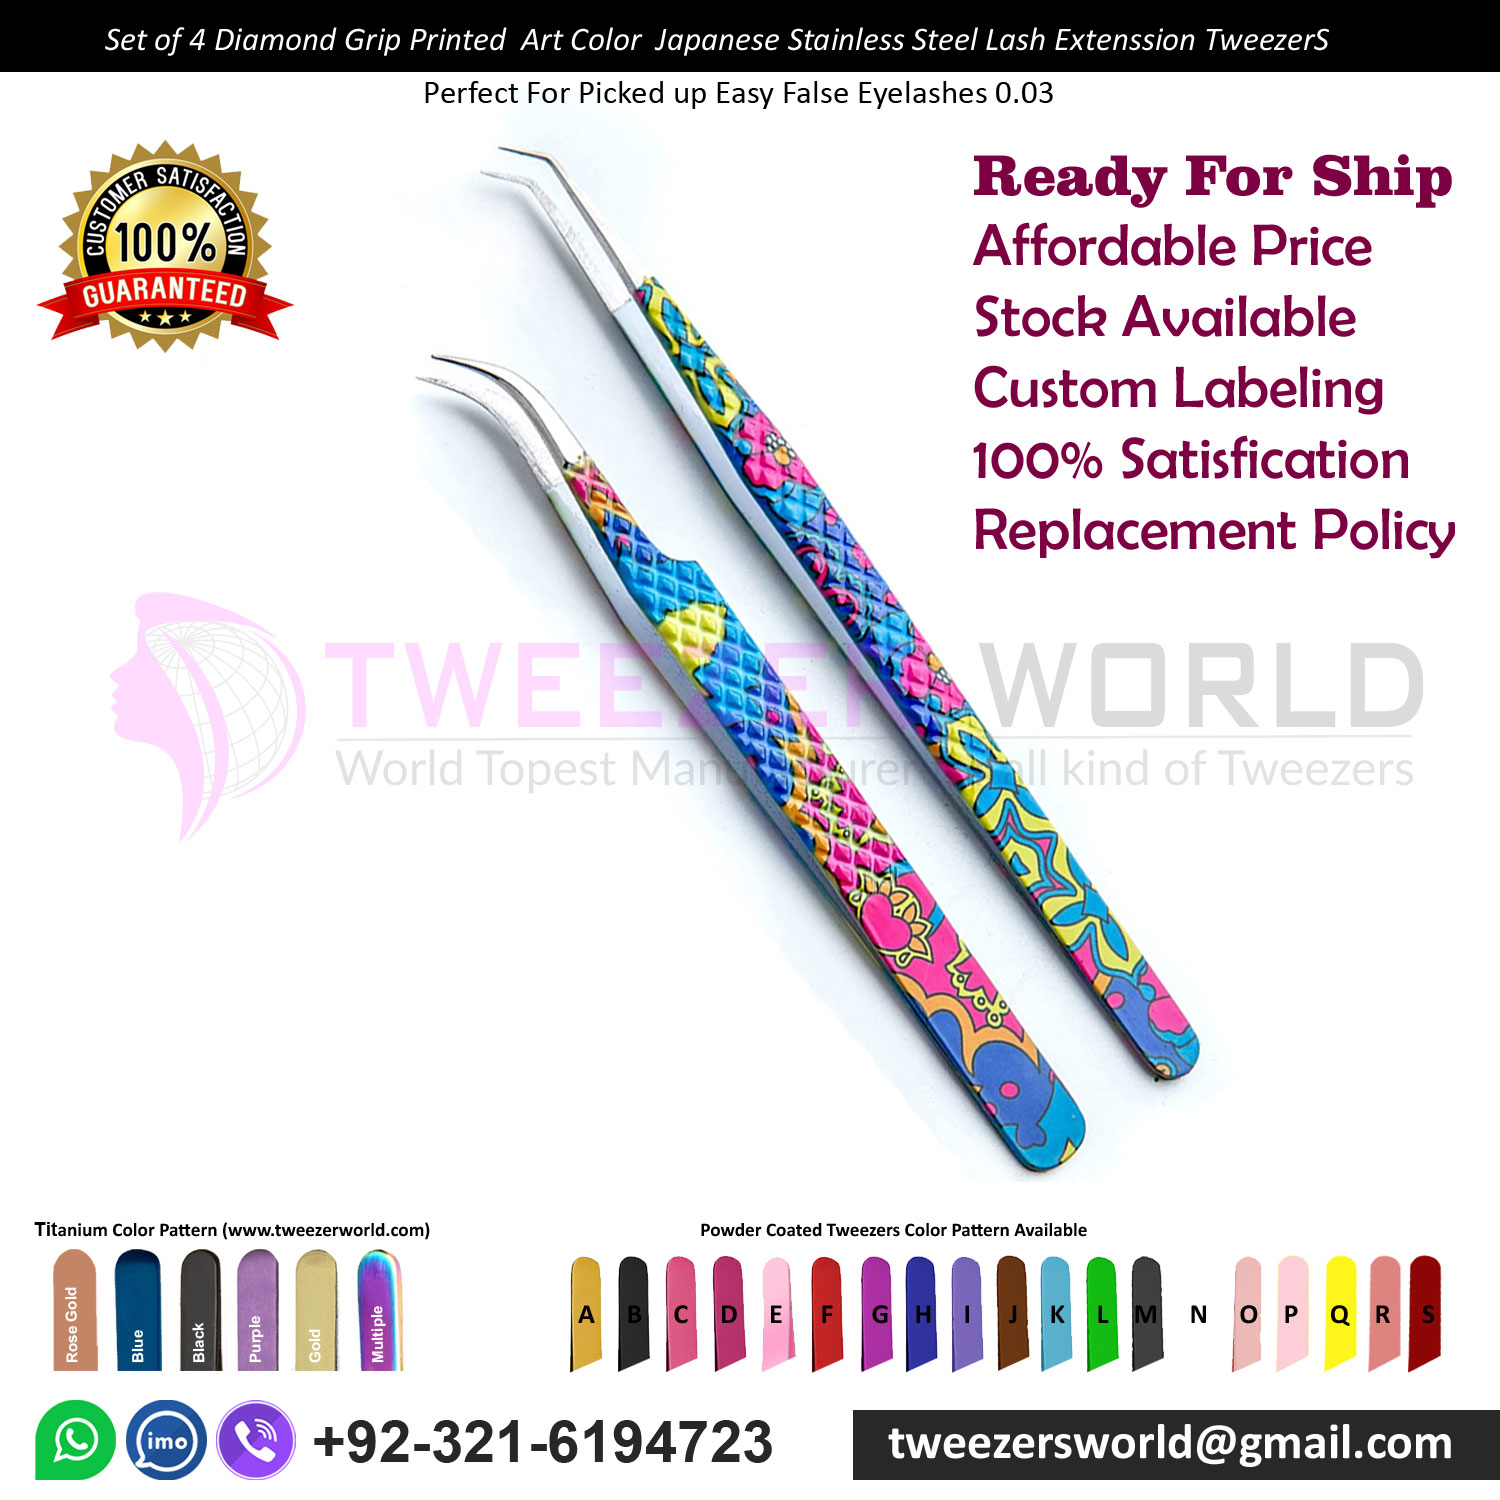 Set of 4 Diamond Grip Printed Art Color Stainless Steel Lash Extension Tweezers